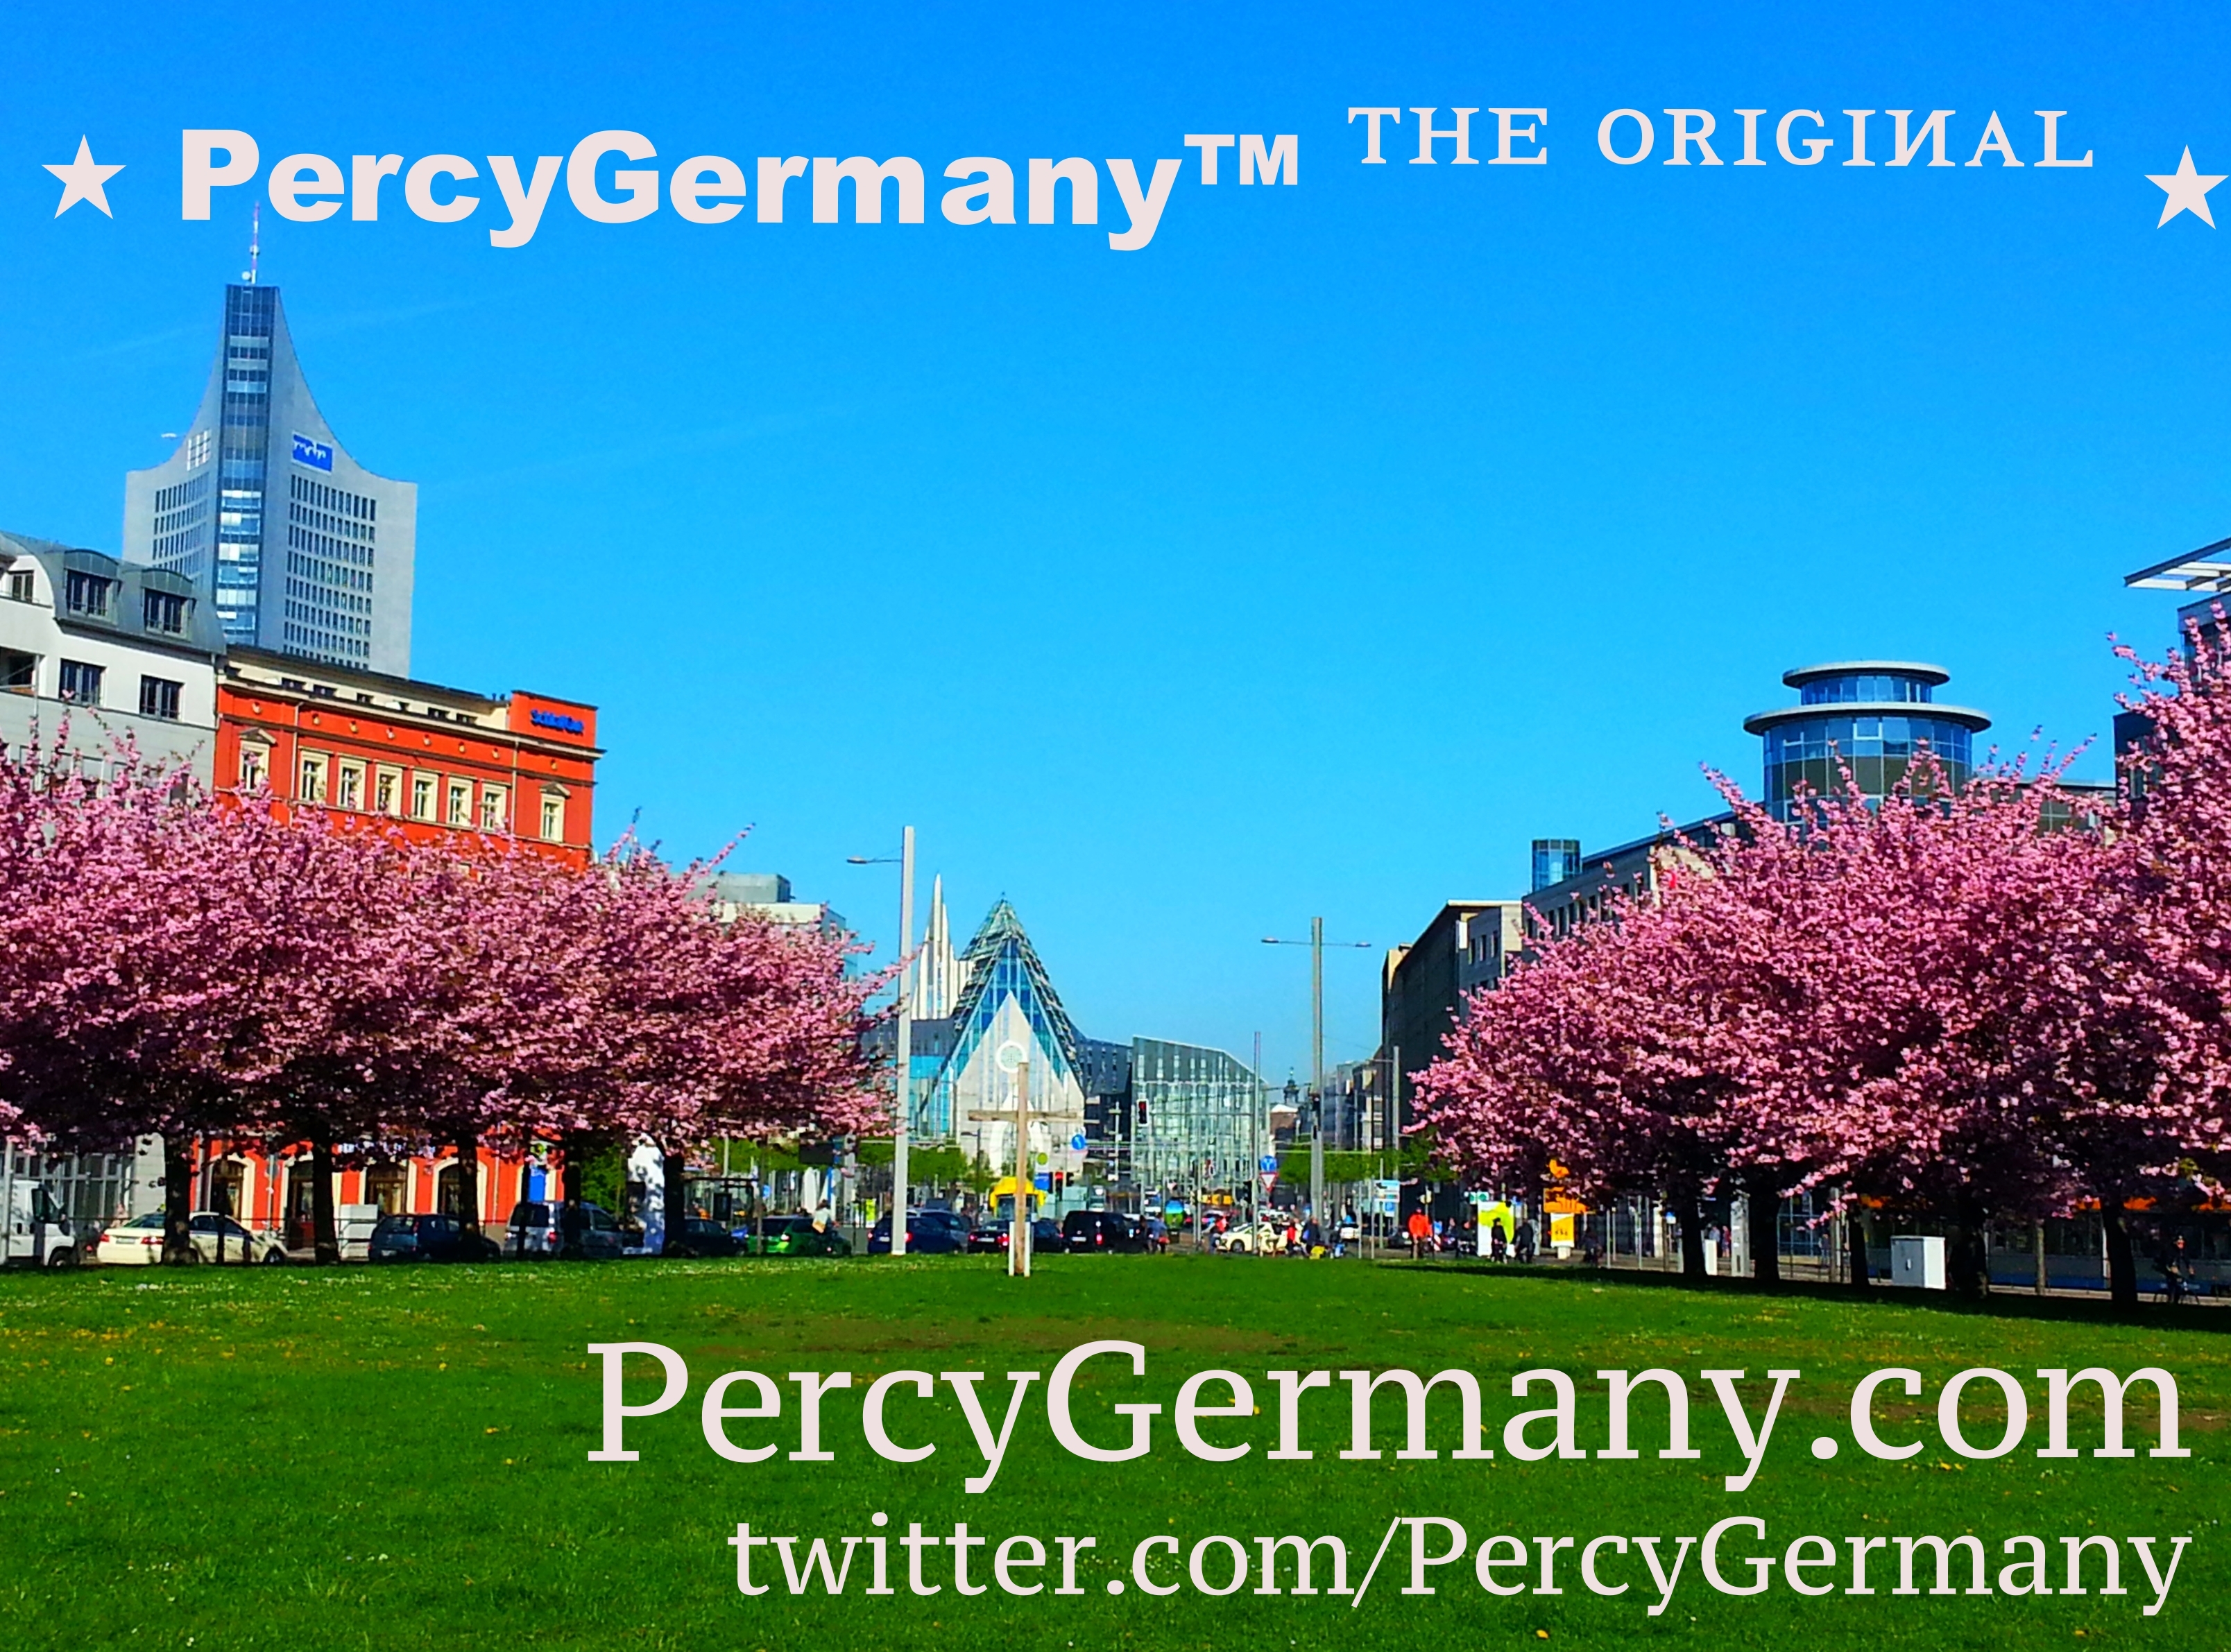 PercyGermany.com